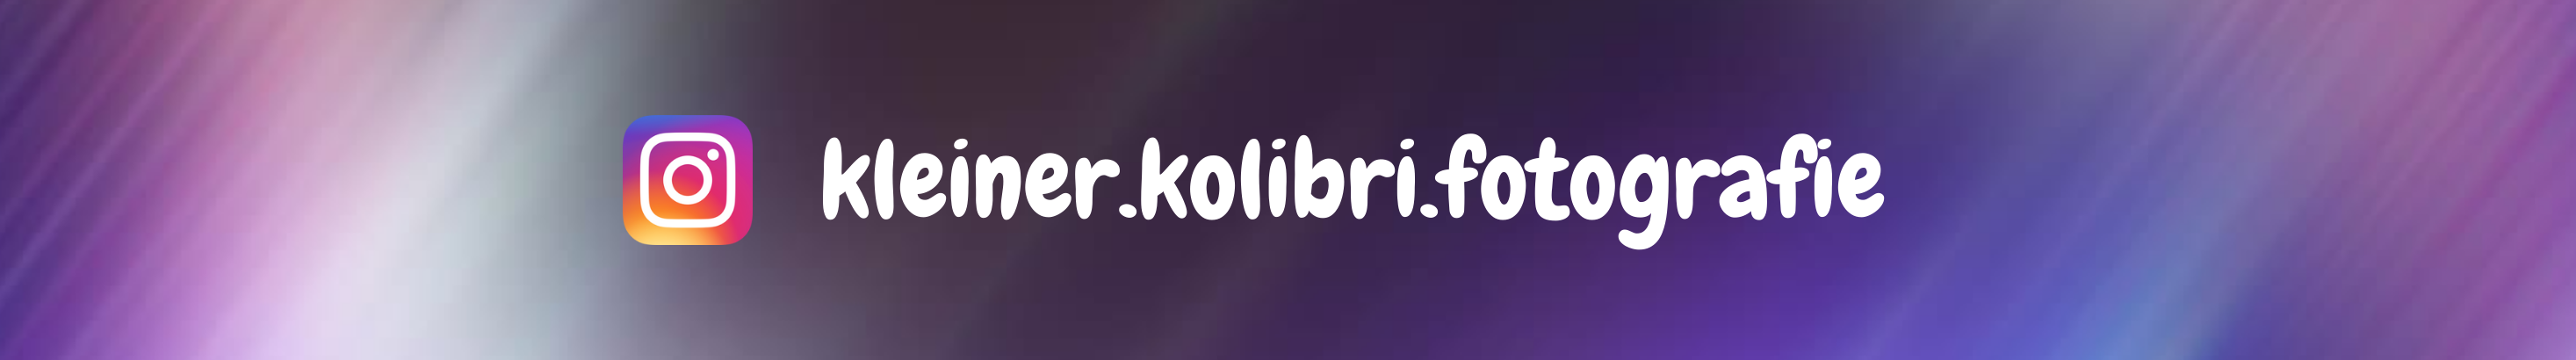 KleinerKolibri Fotografie's profile banner